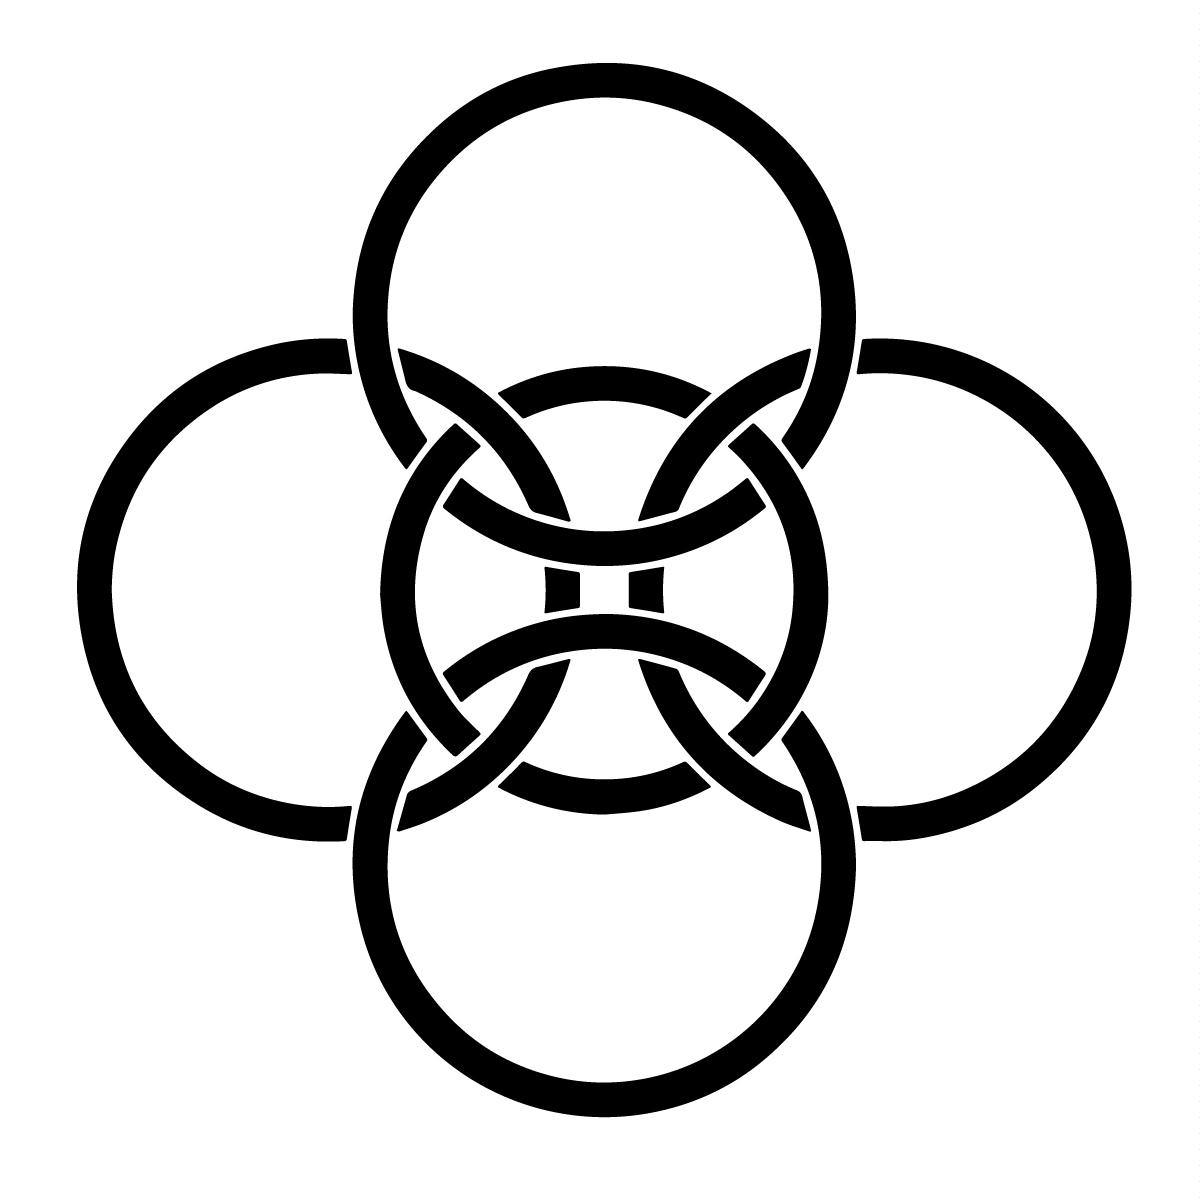 Keltský symbol prepojenia 5 kruhov - Ilustrácia